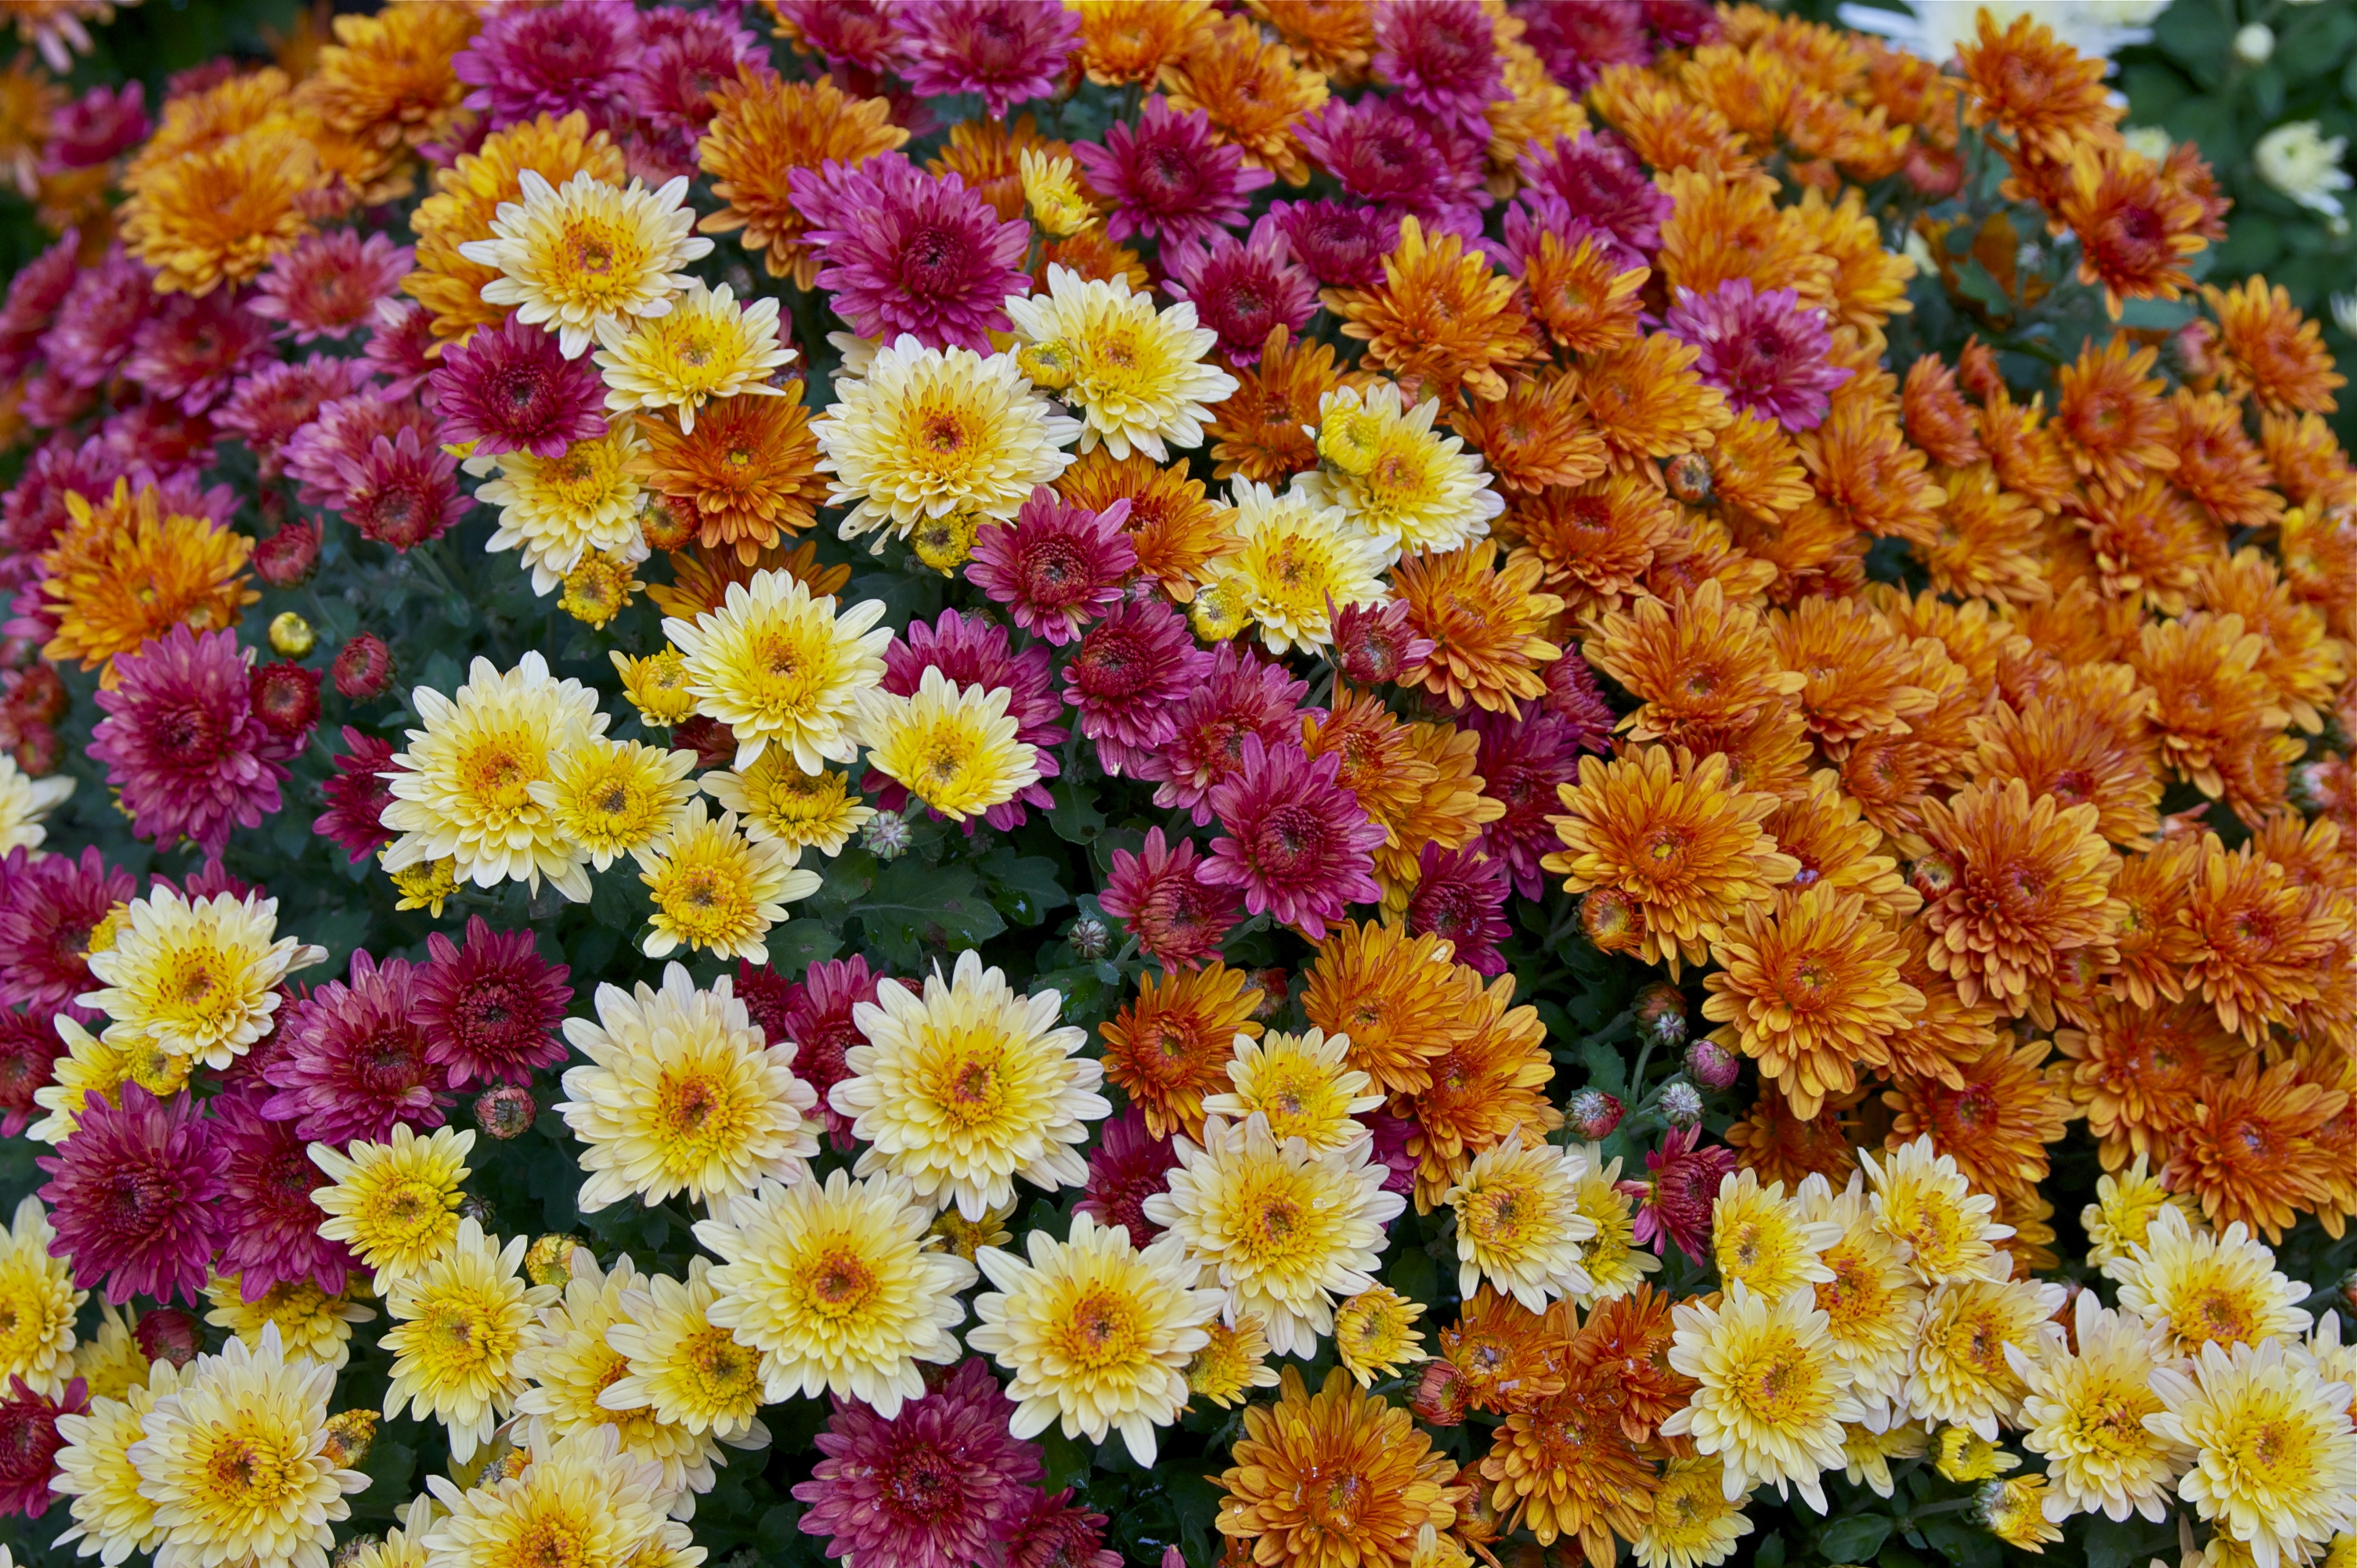 Chrysanthemums photo